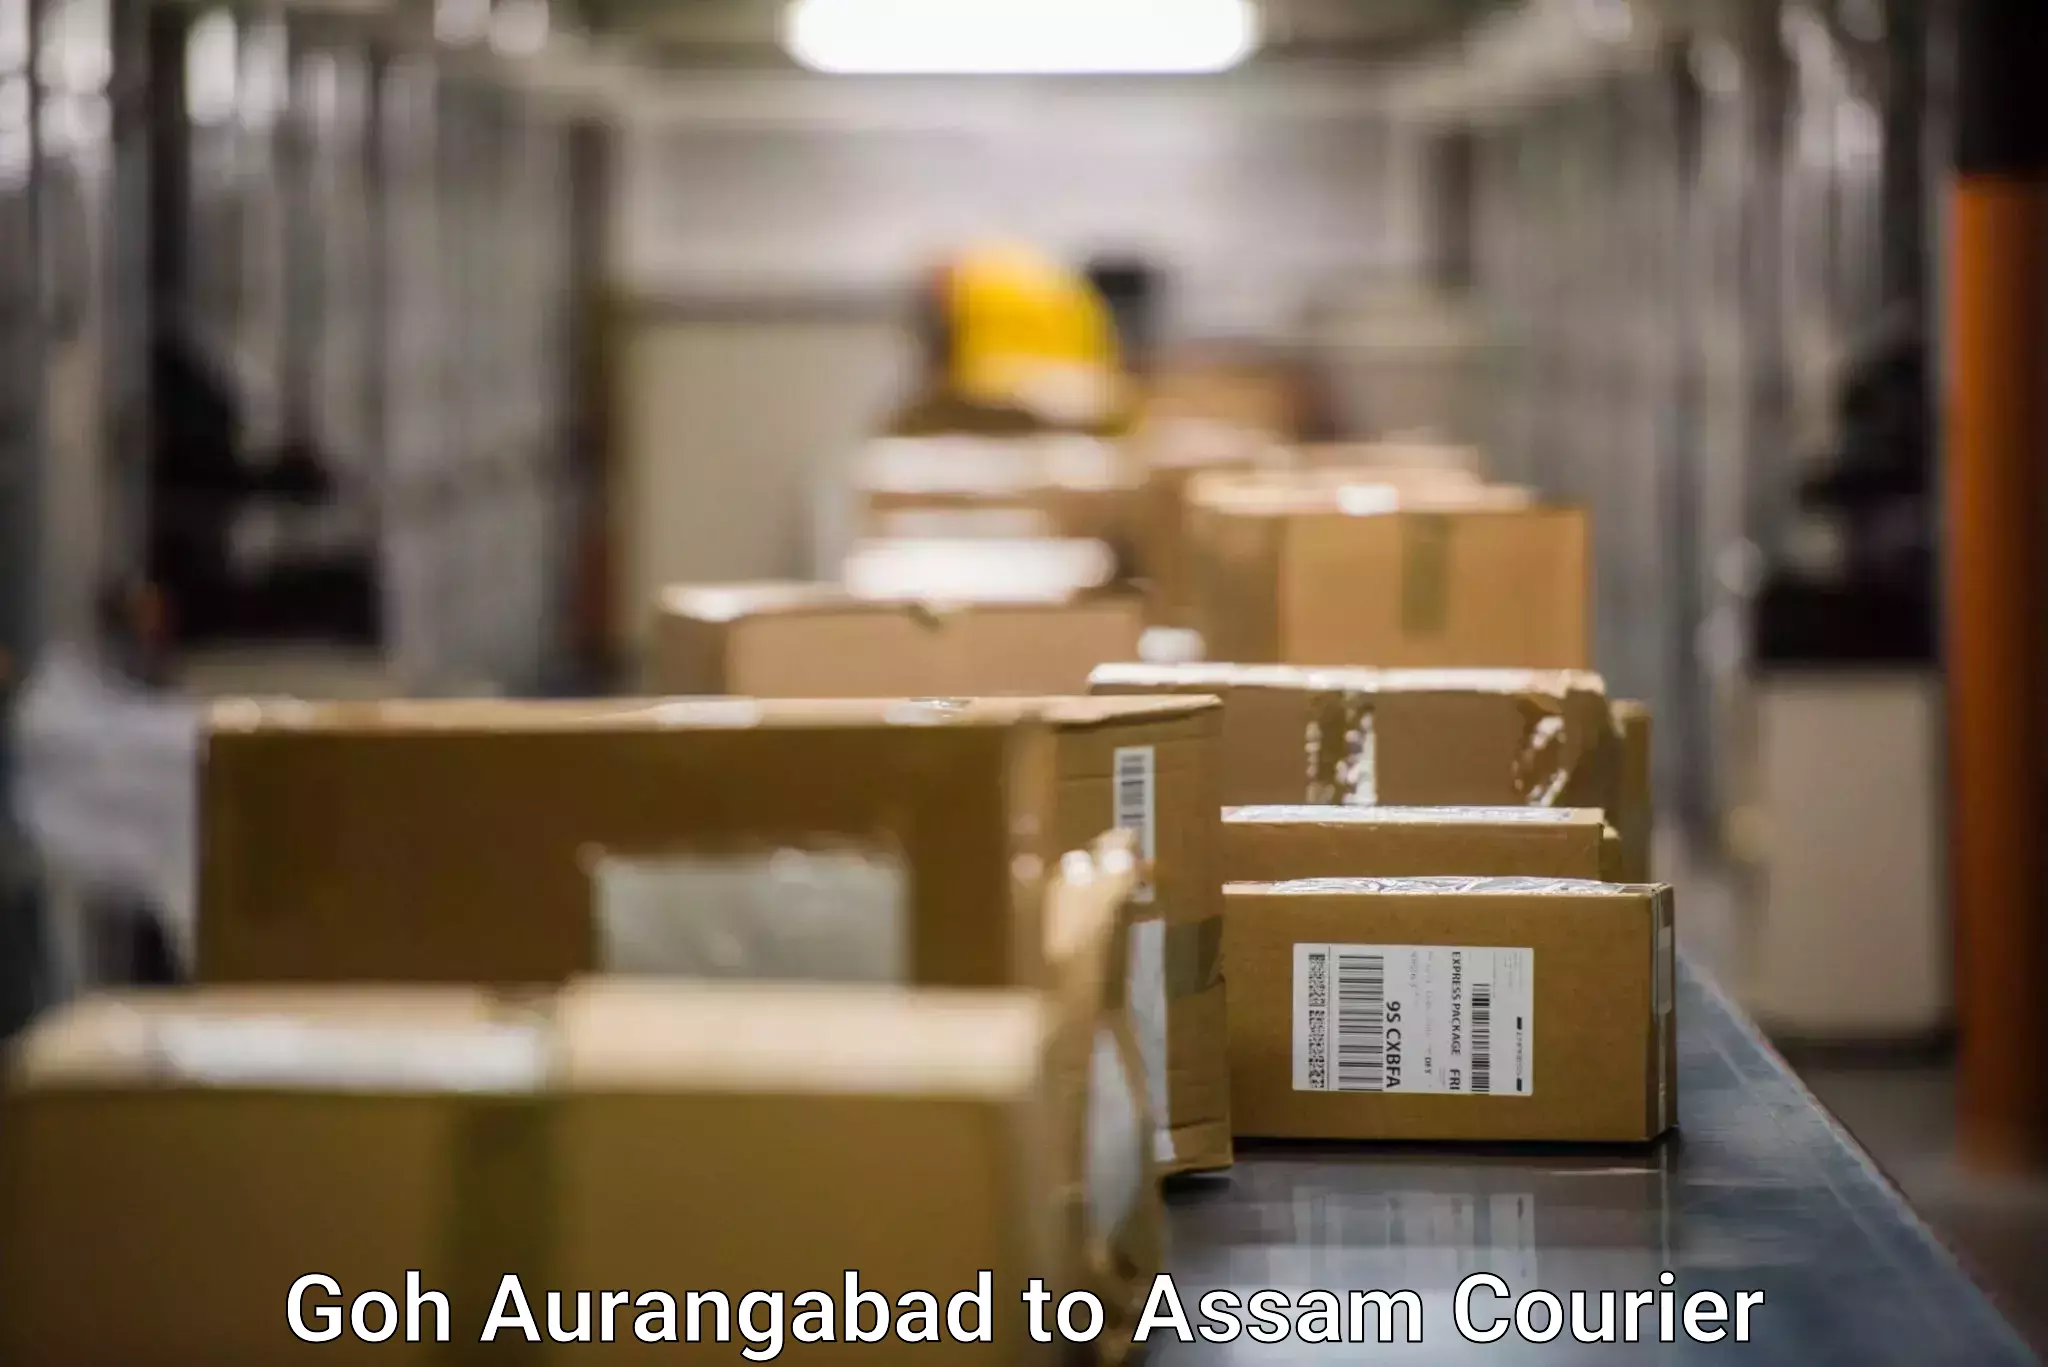 Same-day delivery options Goh Aurangabad to Assam